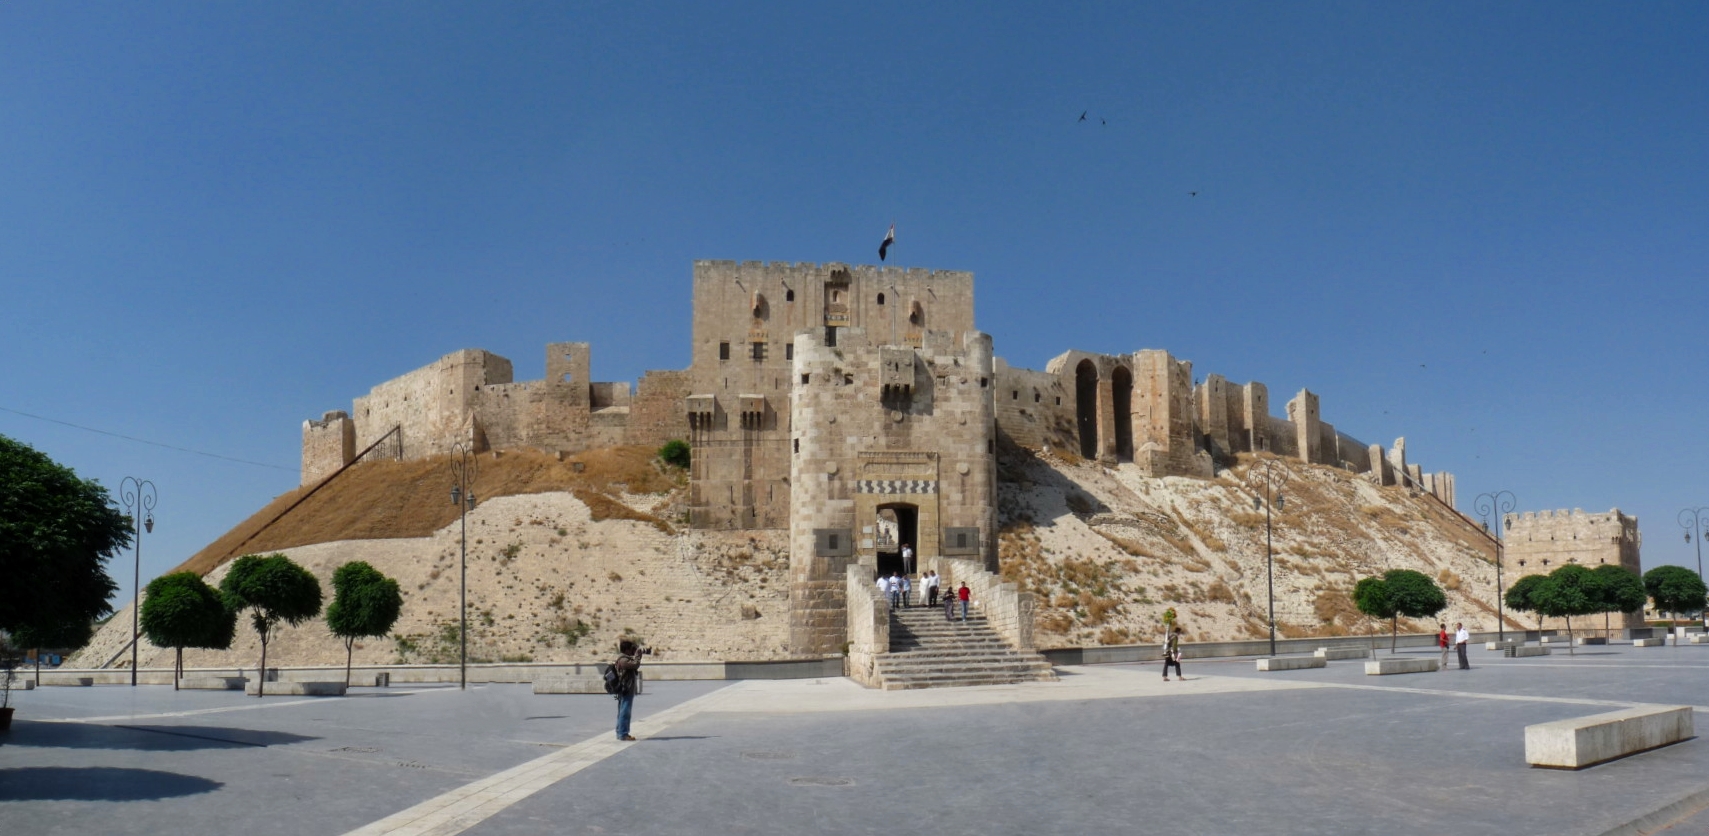 Aleppo's ancient citadel, Syria